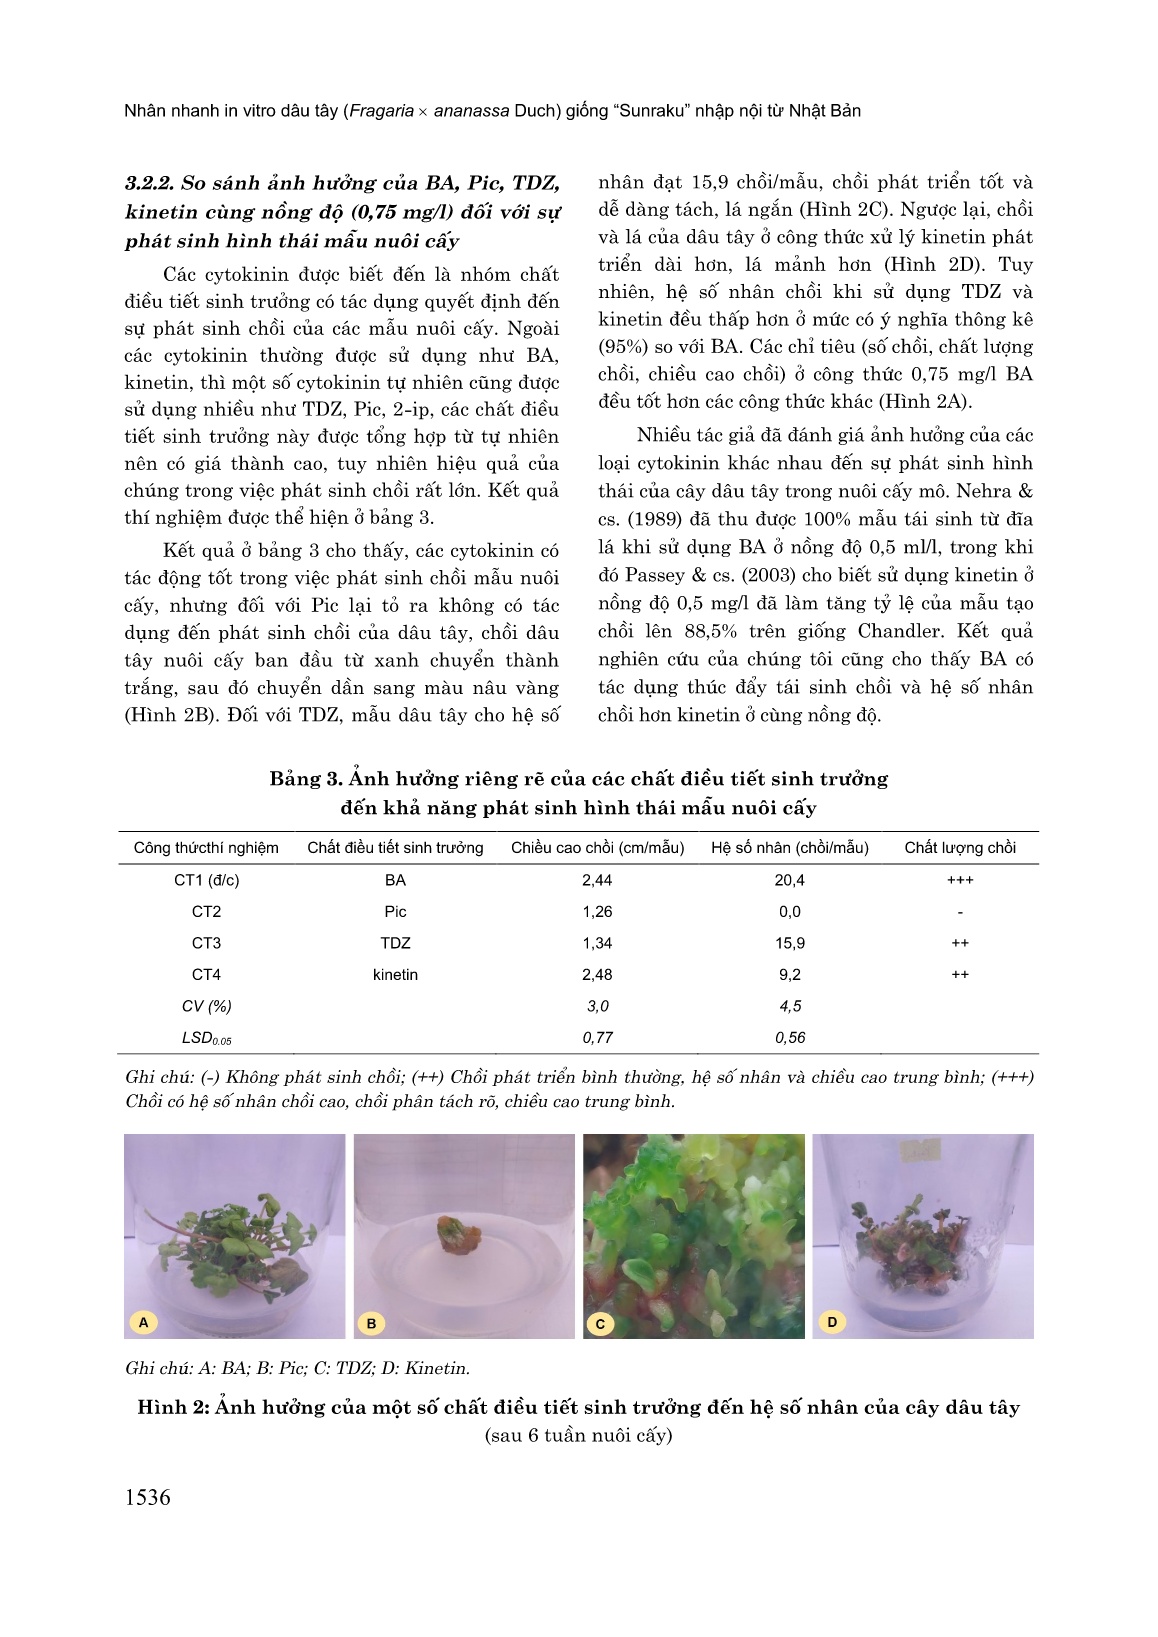 Nhân nhanh in vitro dâu tây (Fragaria x Ananassa Duch) giống “Sunraku” nhập nội từ Nhật Bản trang 6